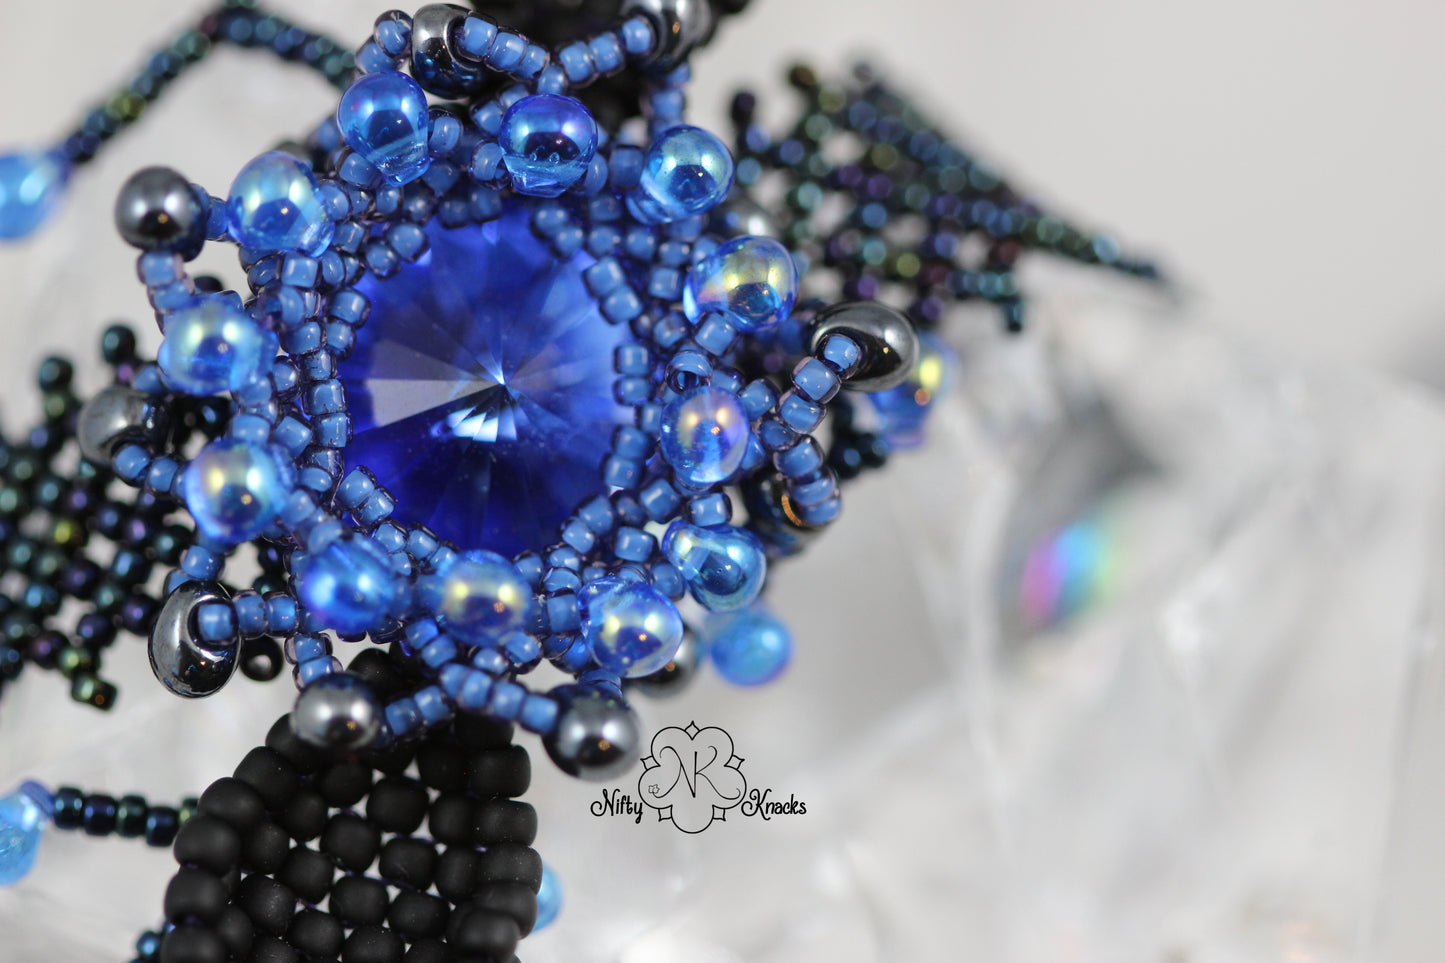 Blue and Black Flower Trellis Woven Bracelet